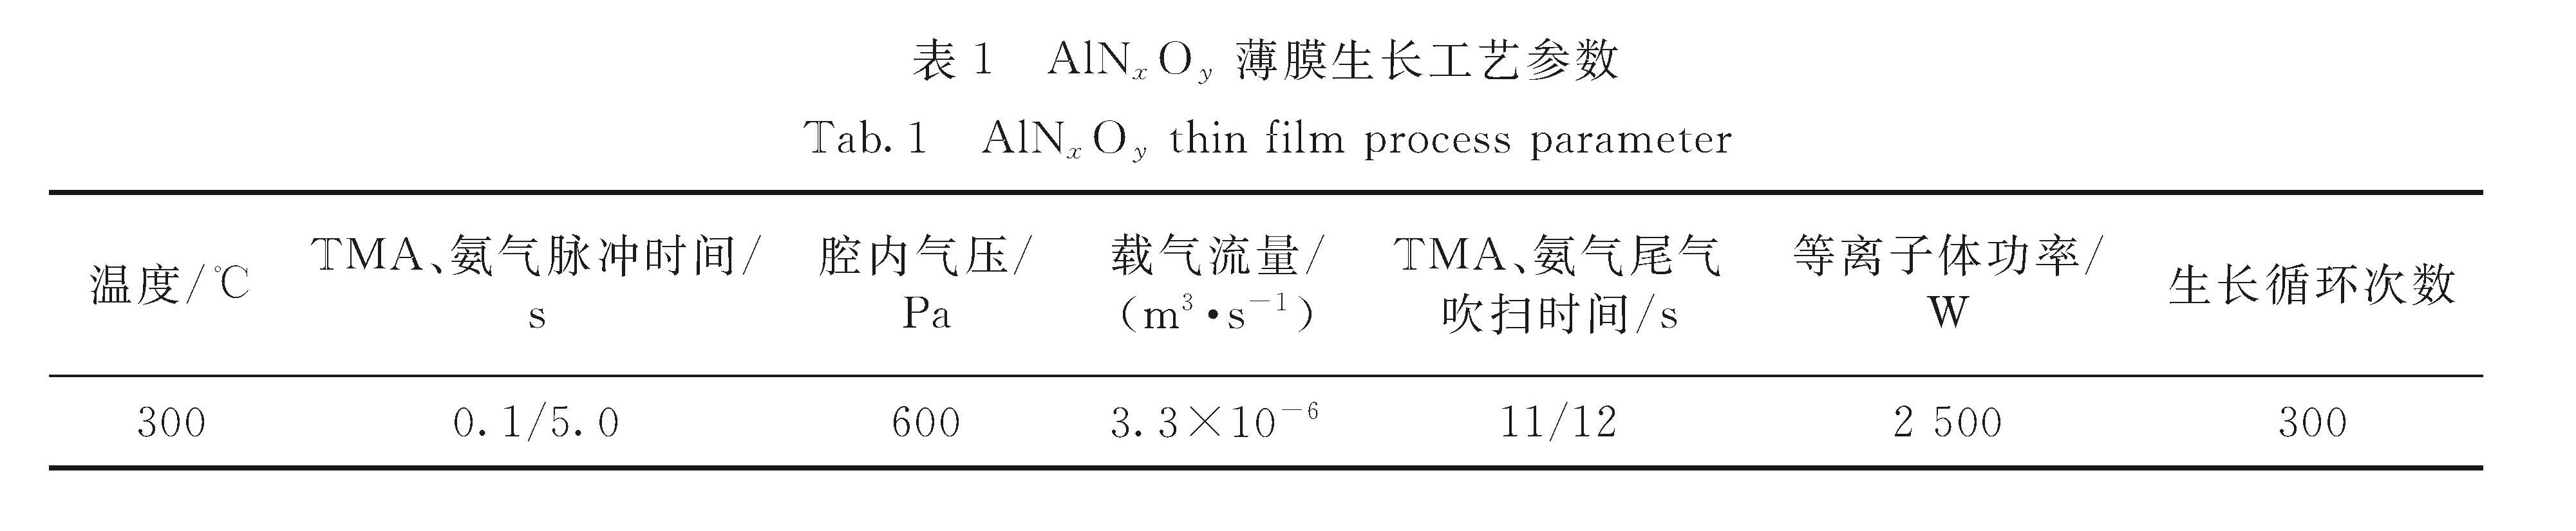 表1 AlNxOy薄膜生长工艺参数<br/>Tab.1 AlNxOy thin film process parameter